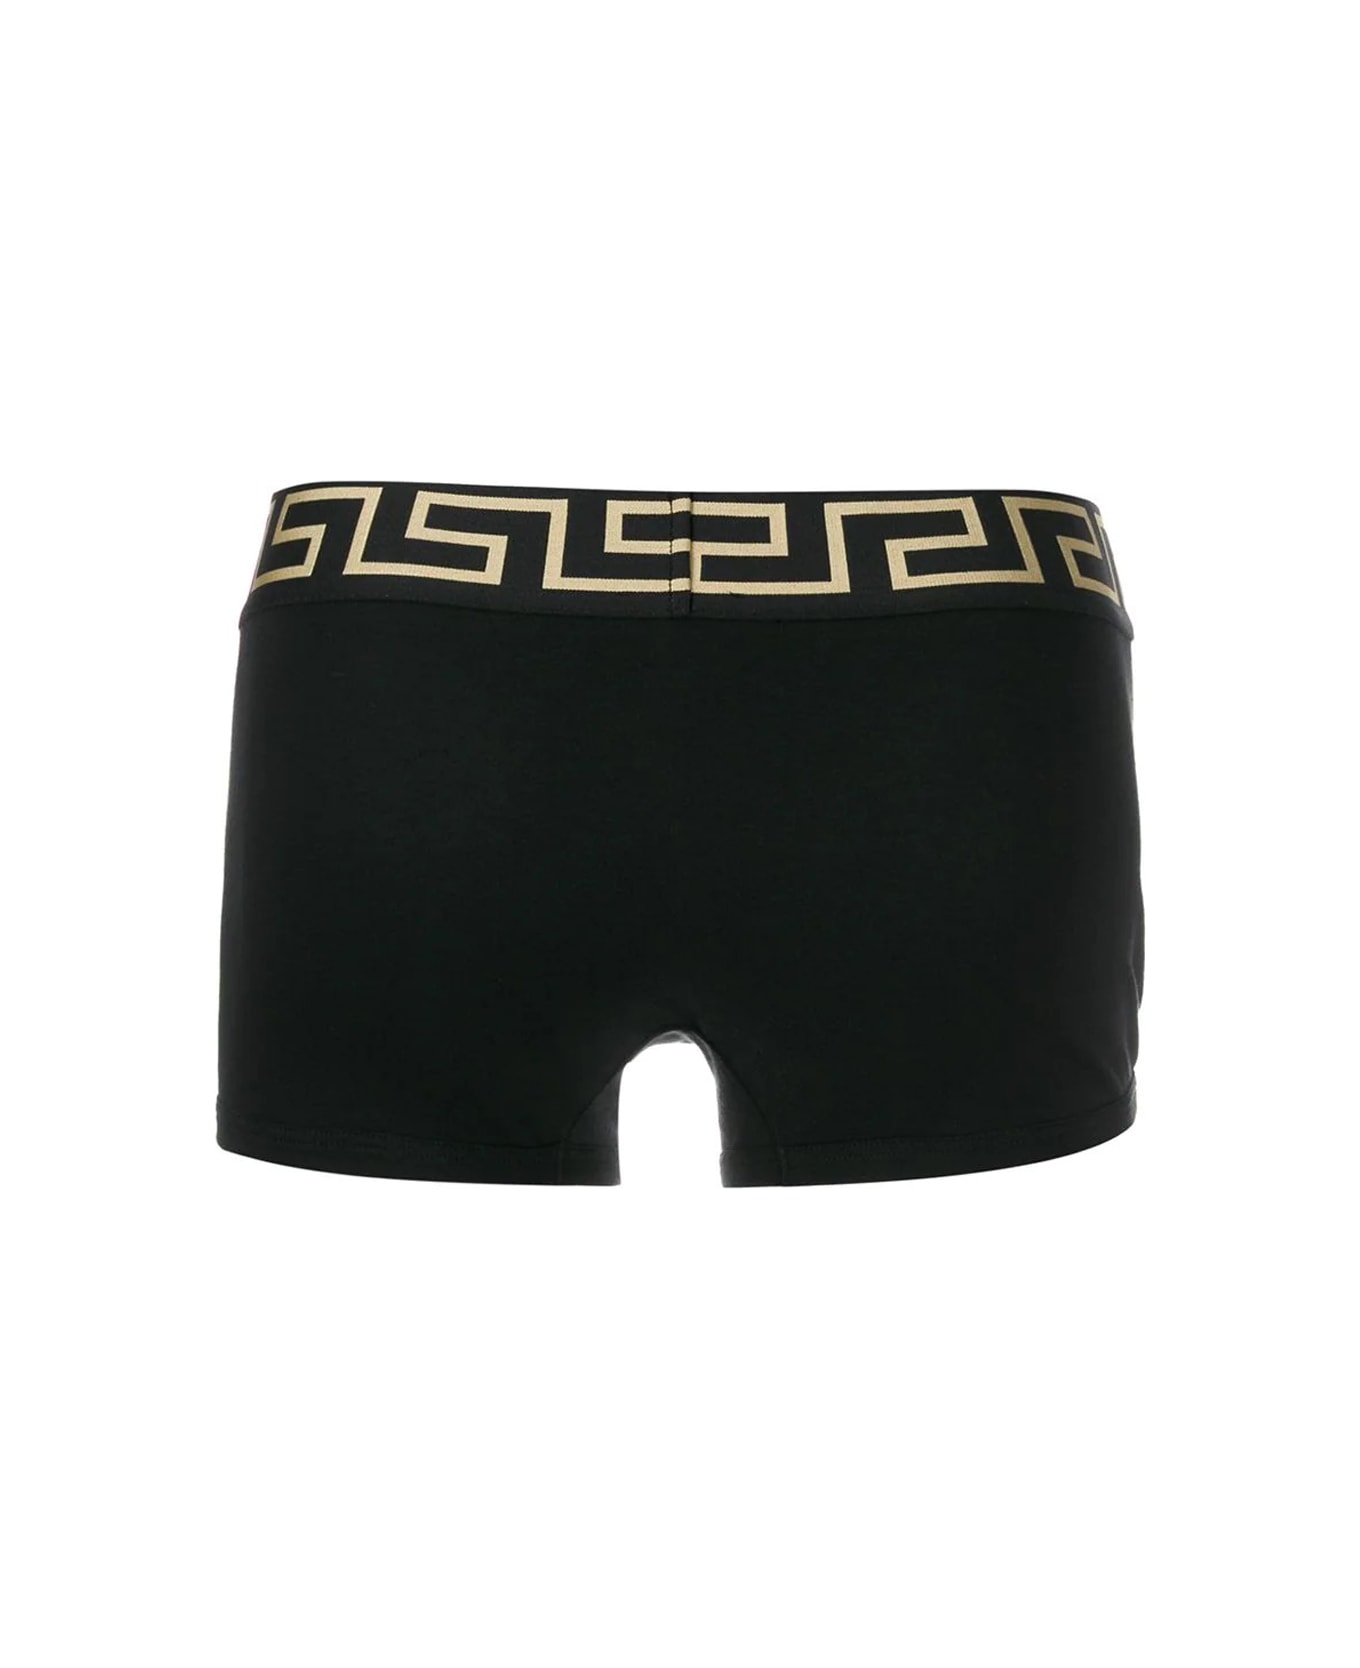 Versace Underwear - G Black Gold